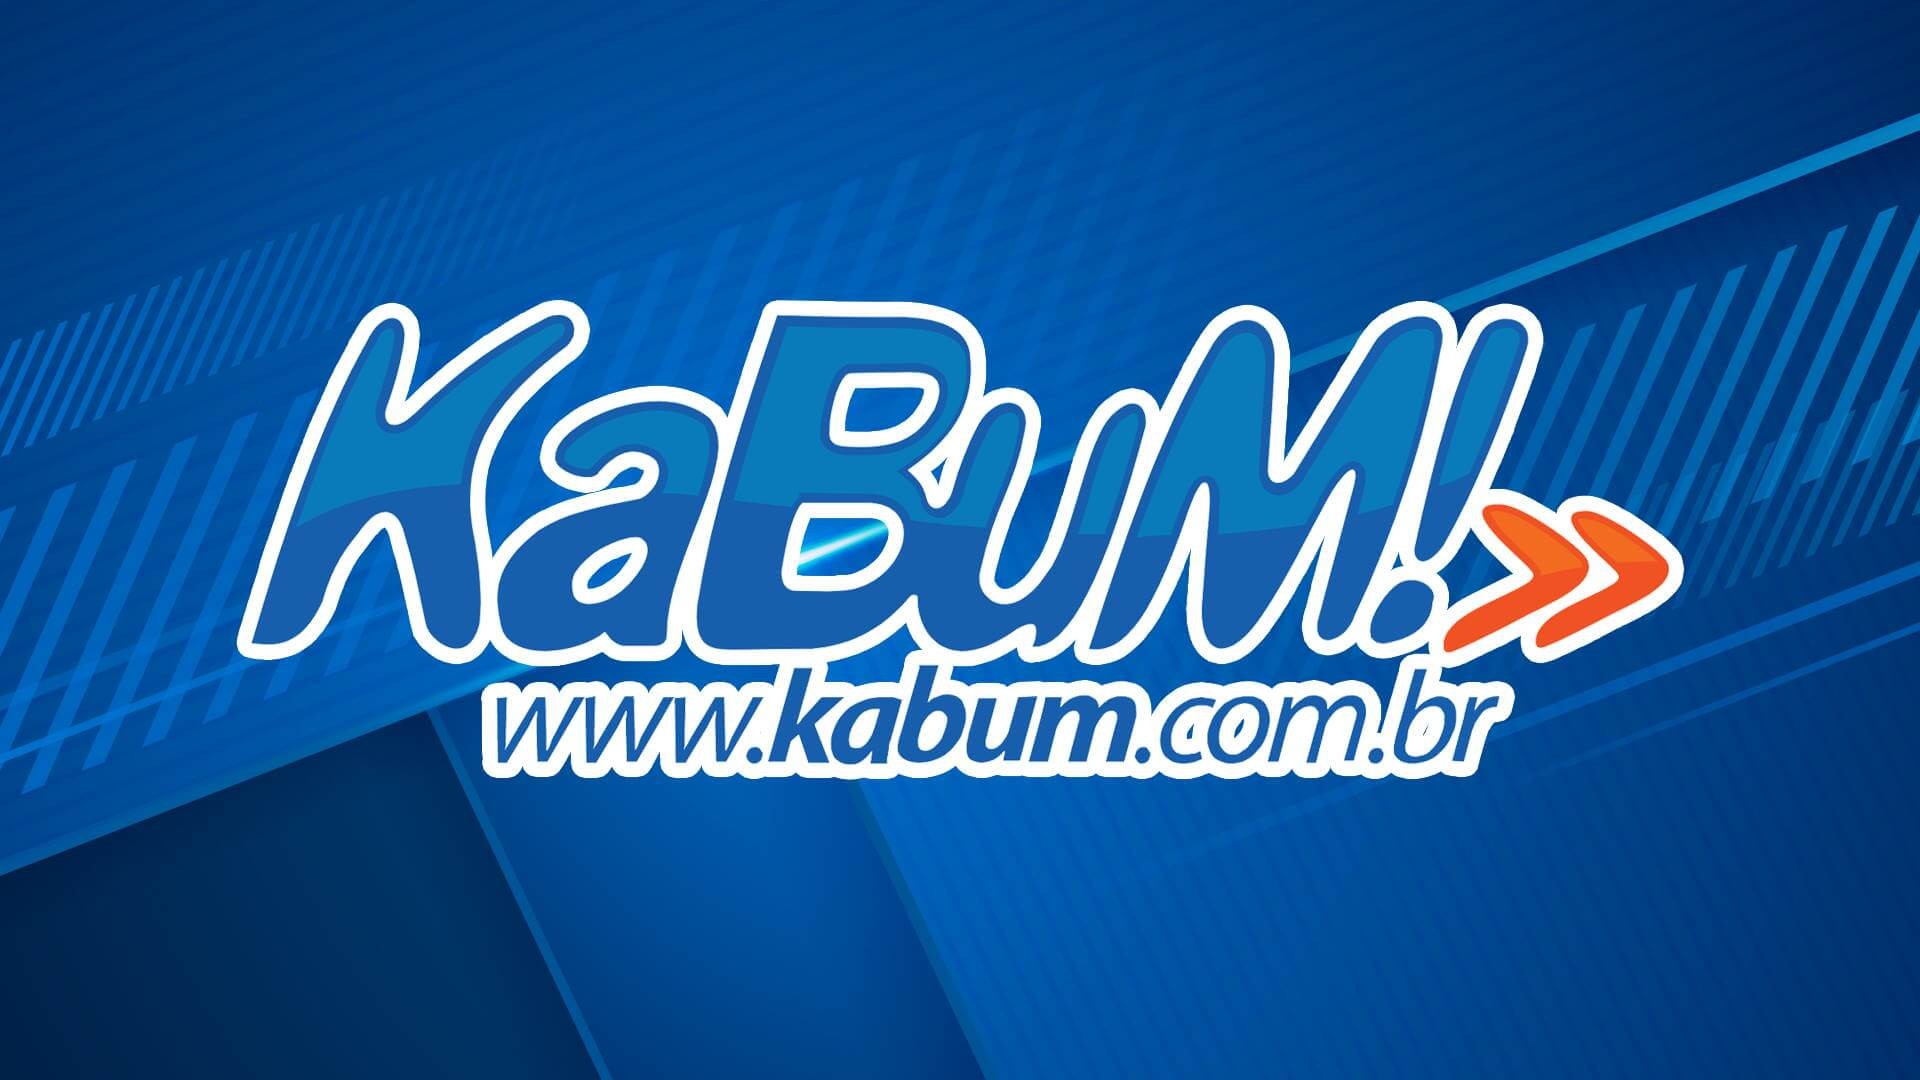 KaBuM! - www.kabum.com.br